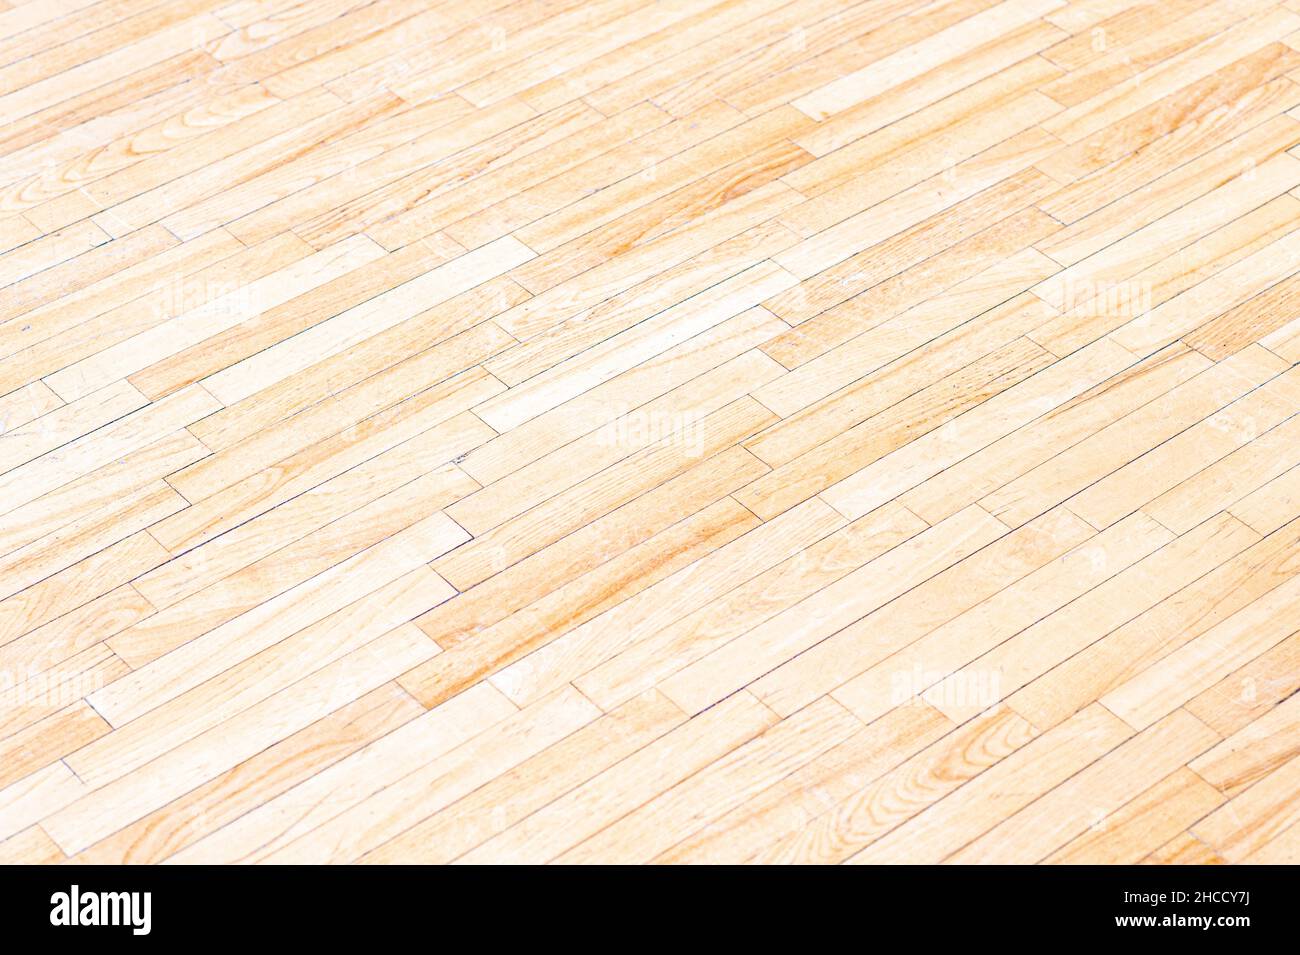 Wooden floor futsal, handball, volleyball, basketball, badminton court. Grunge wood pattern texture background, wooden parquet background texture Stock Photo